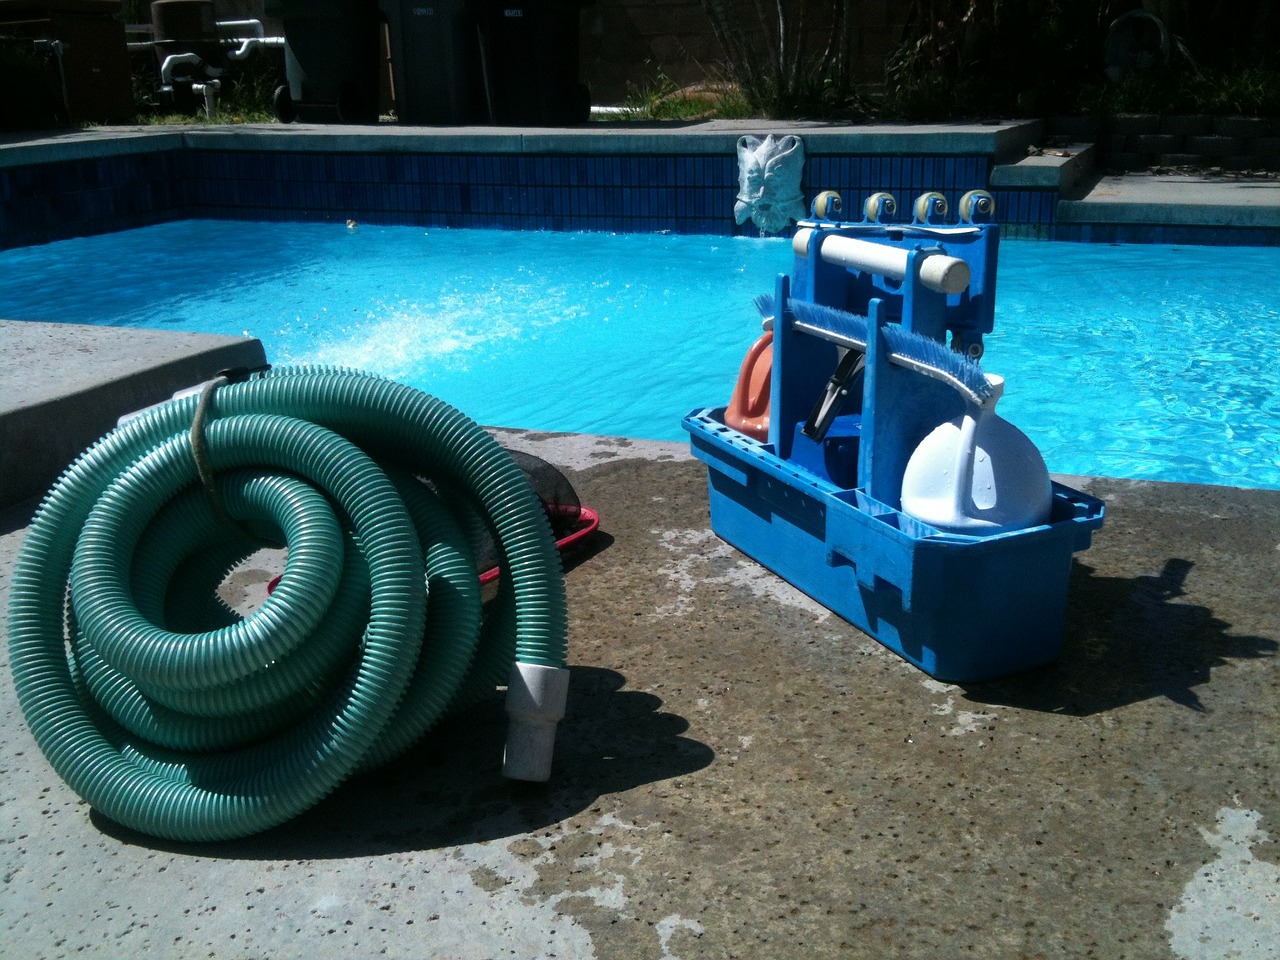 pool-cleaning-330399-1280.jpg